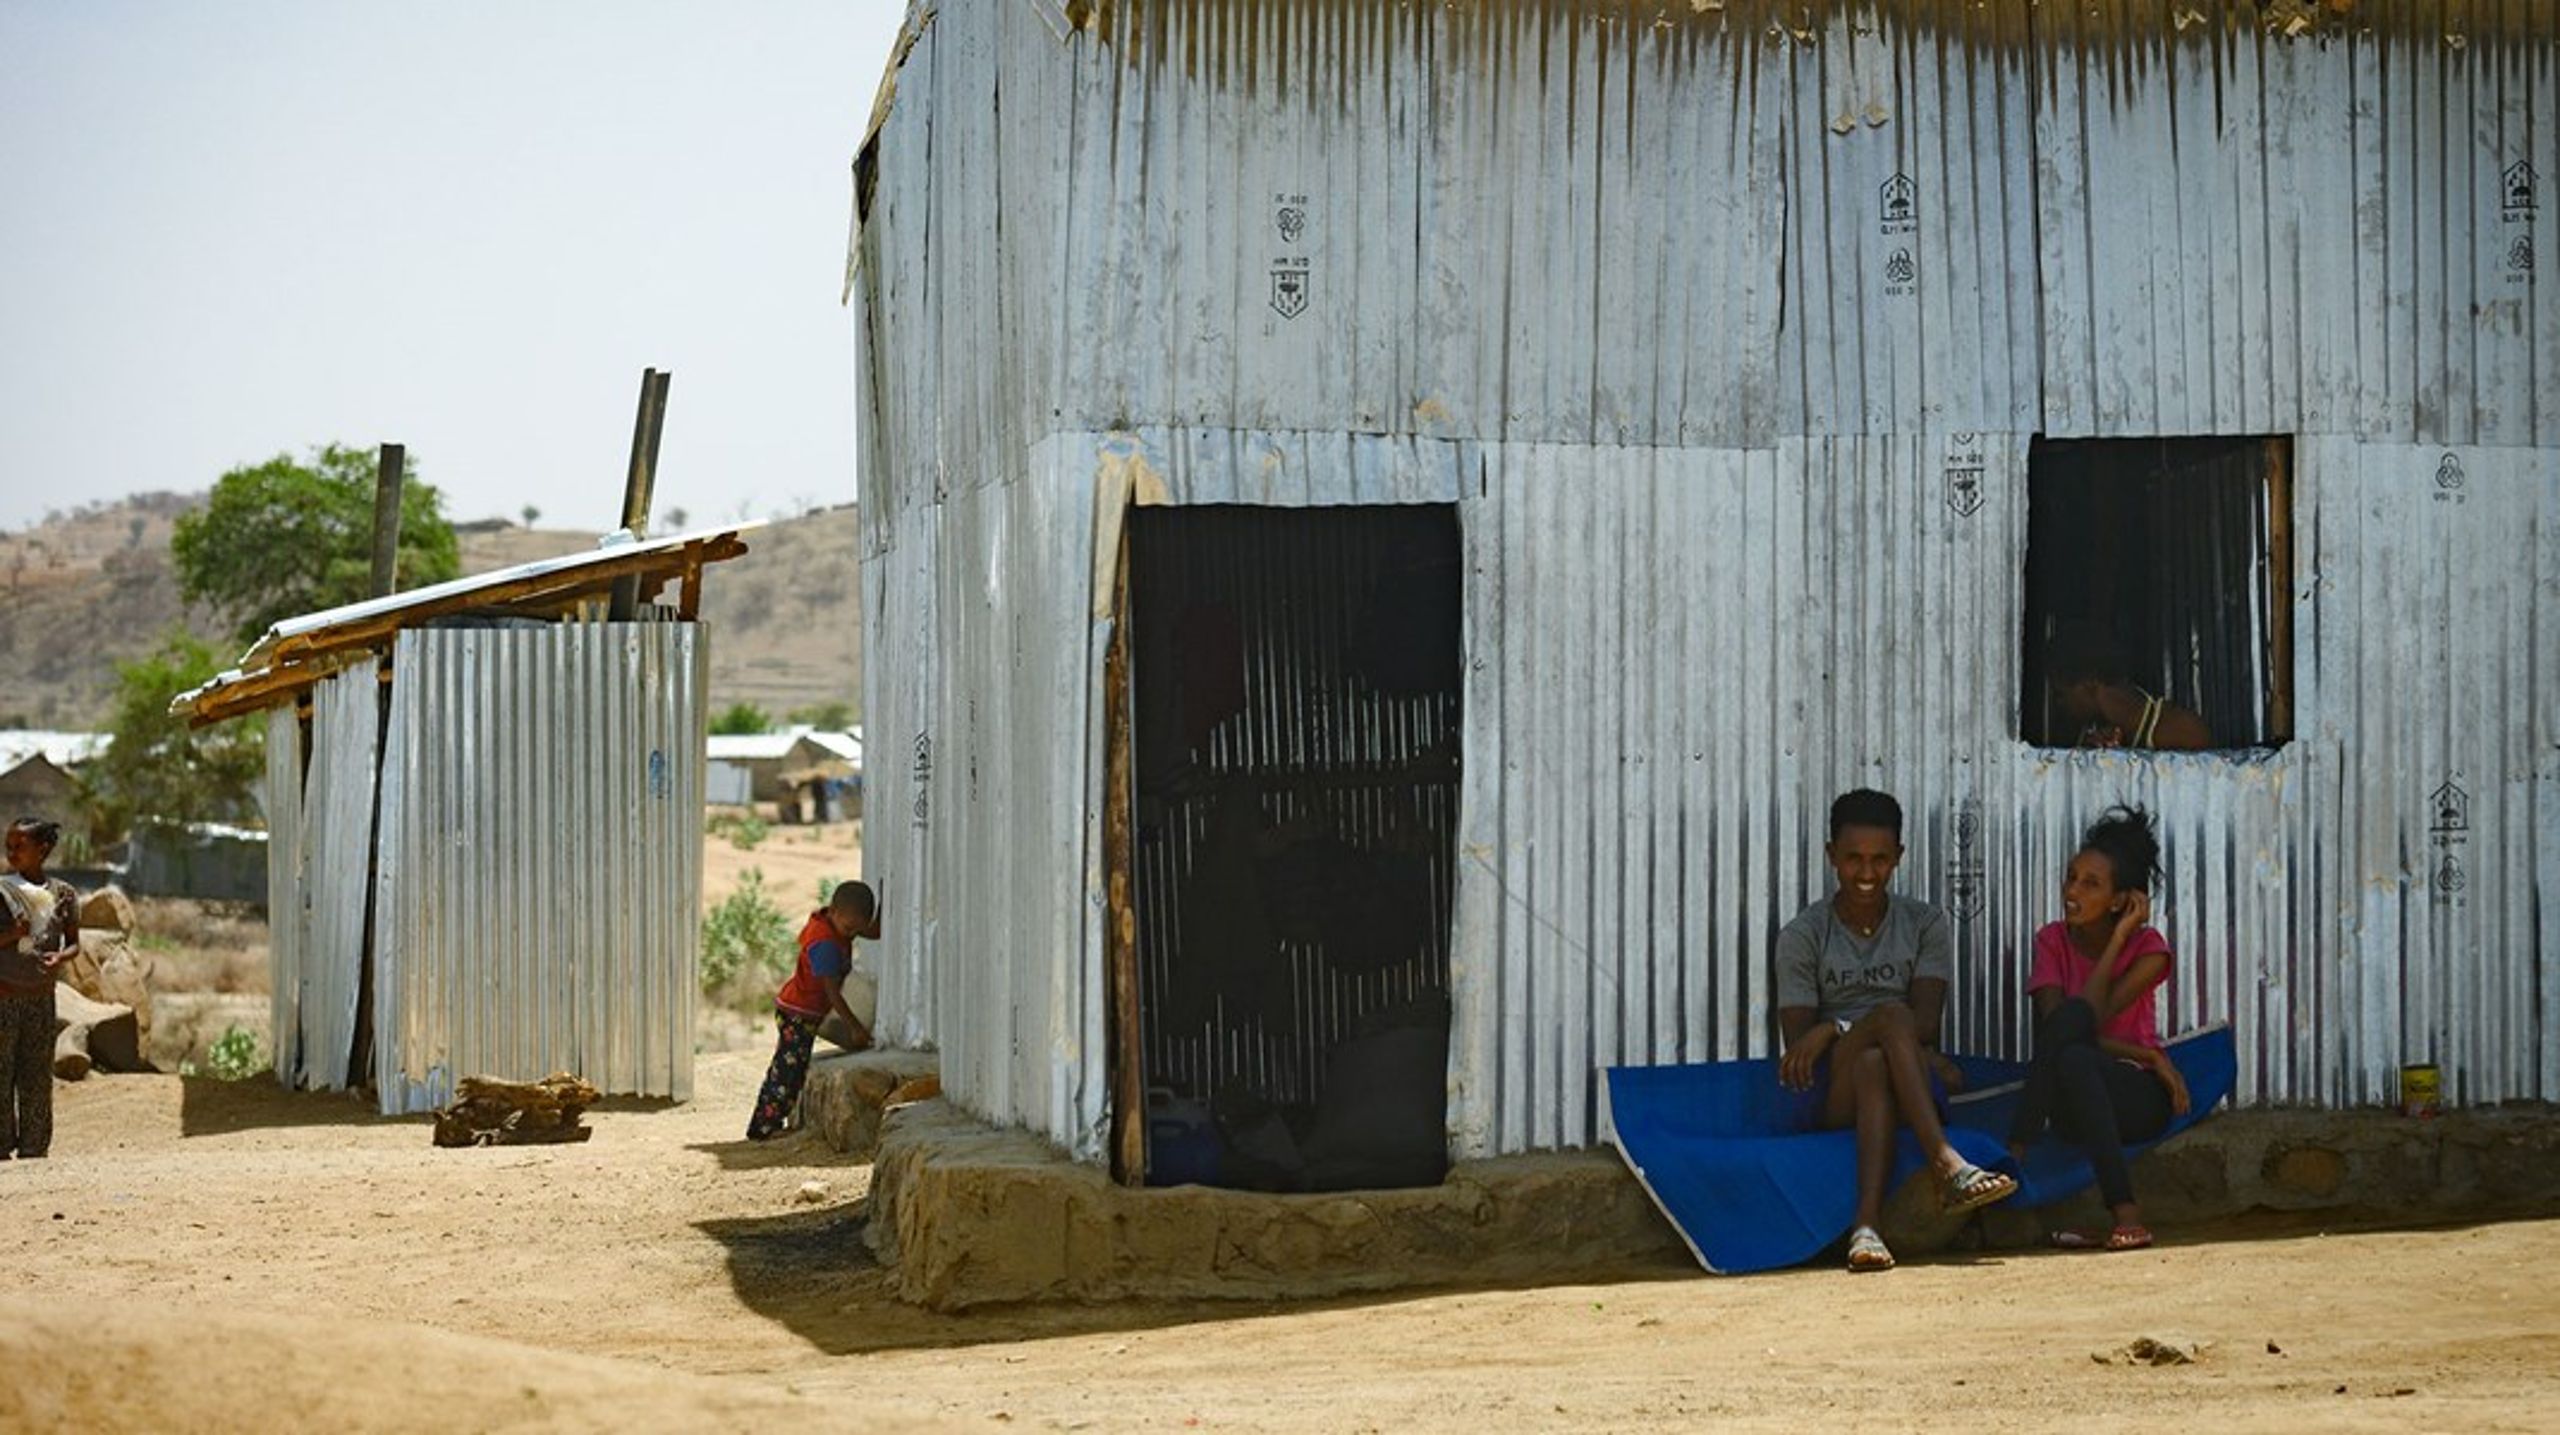 Etiopien, der lige nu er plaget af en voldsom konflikt, prioriterer grønne indsatser højt. Det giver god mening, når man kender landets omstændigheder, skriver&nbsp;Anne Smith Petersen. Arkivfoto.